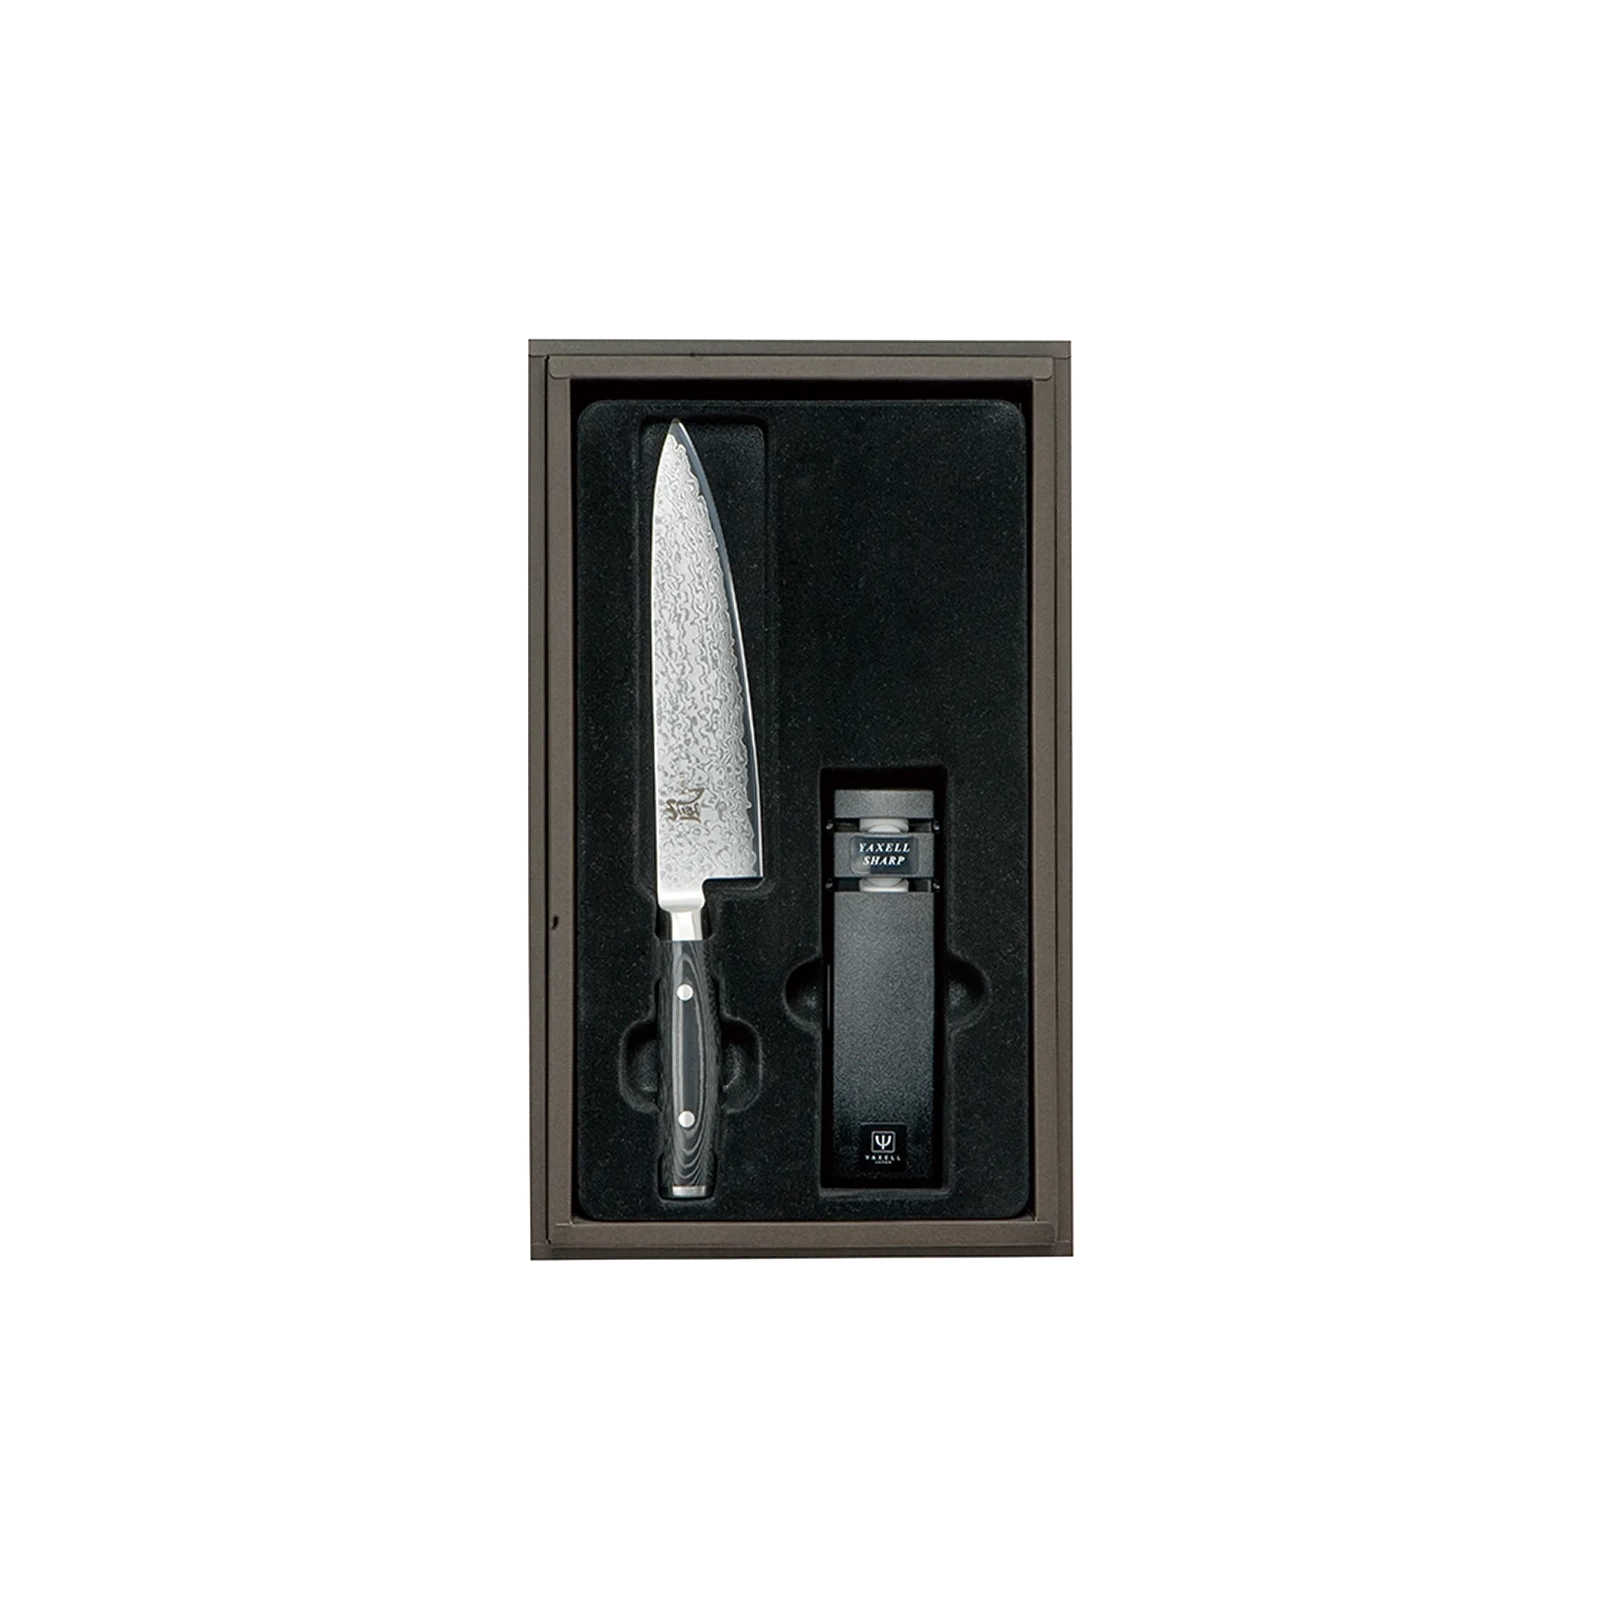 Набір ножів Yaxell з 2-х предметів, серія Ran (36000-002)